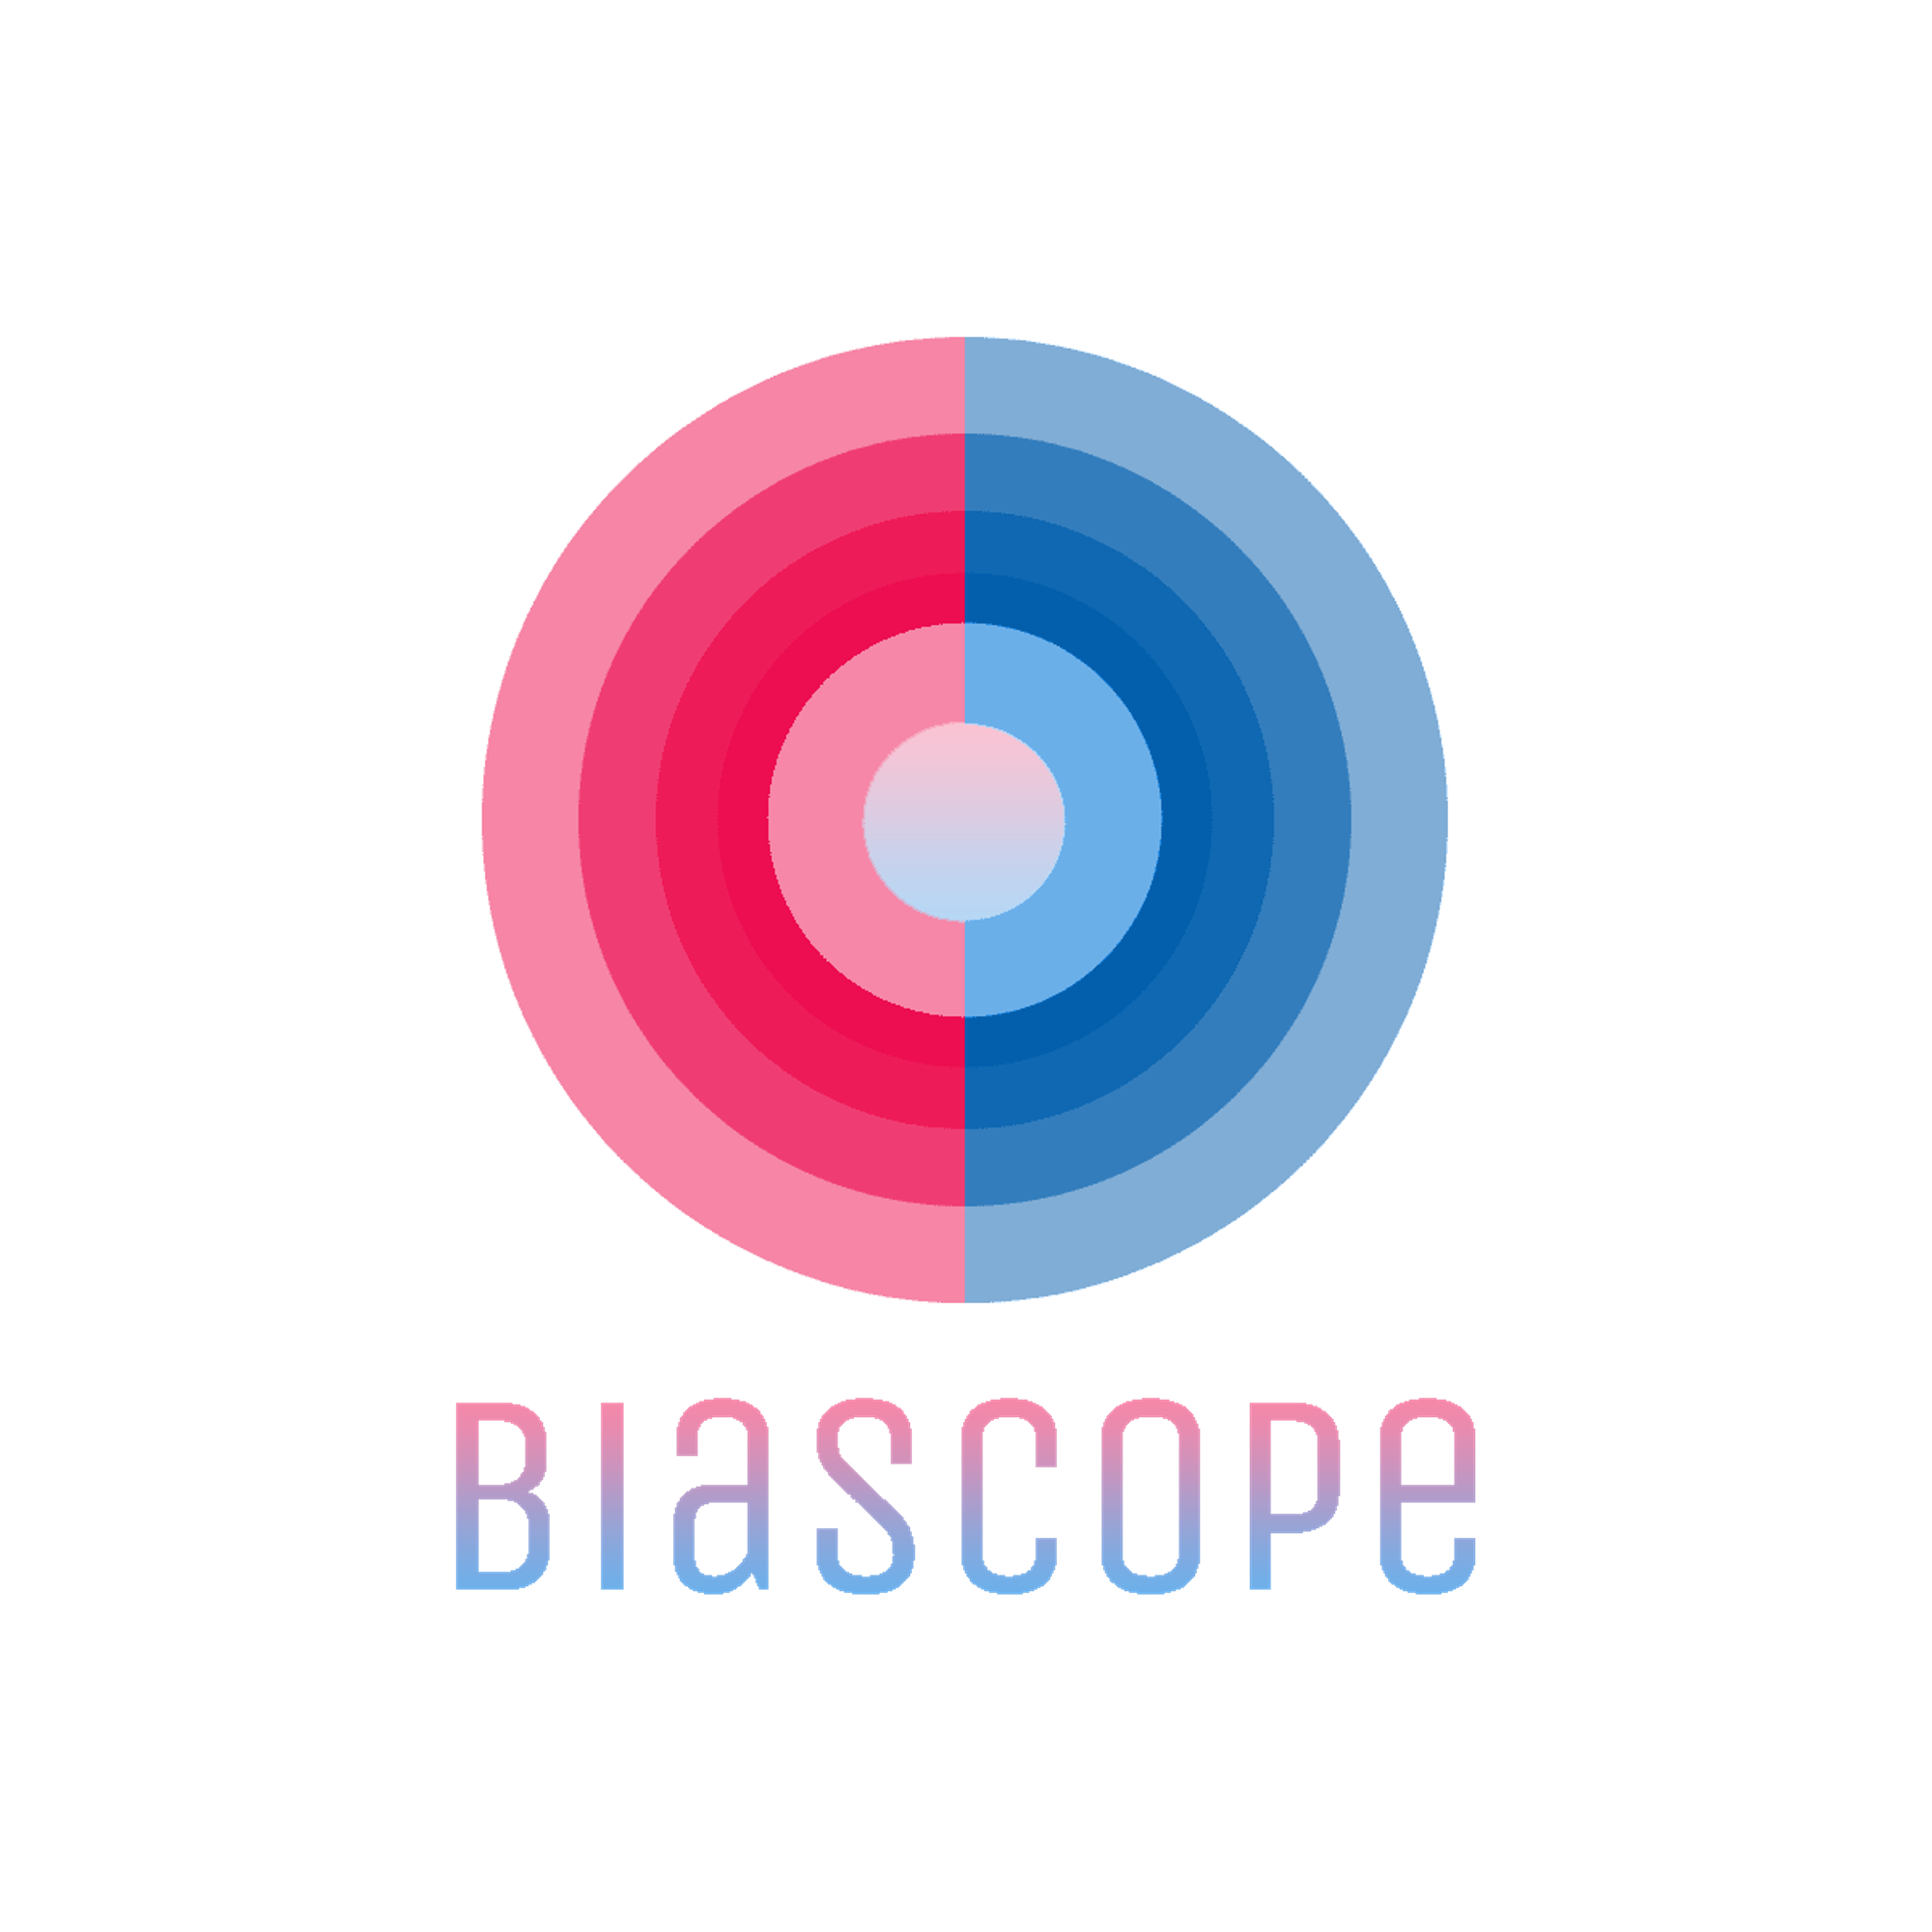 Biascope